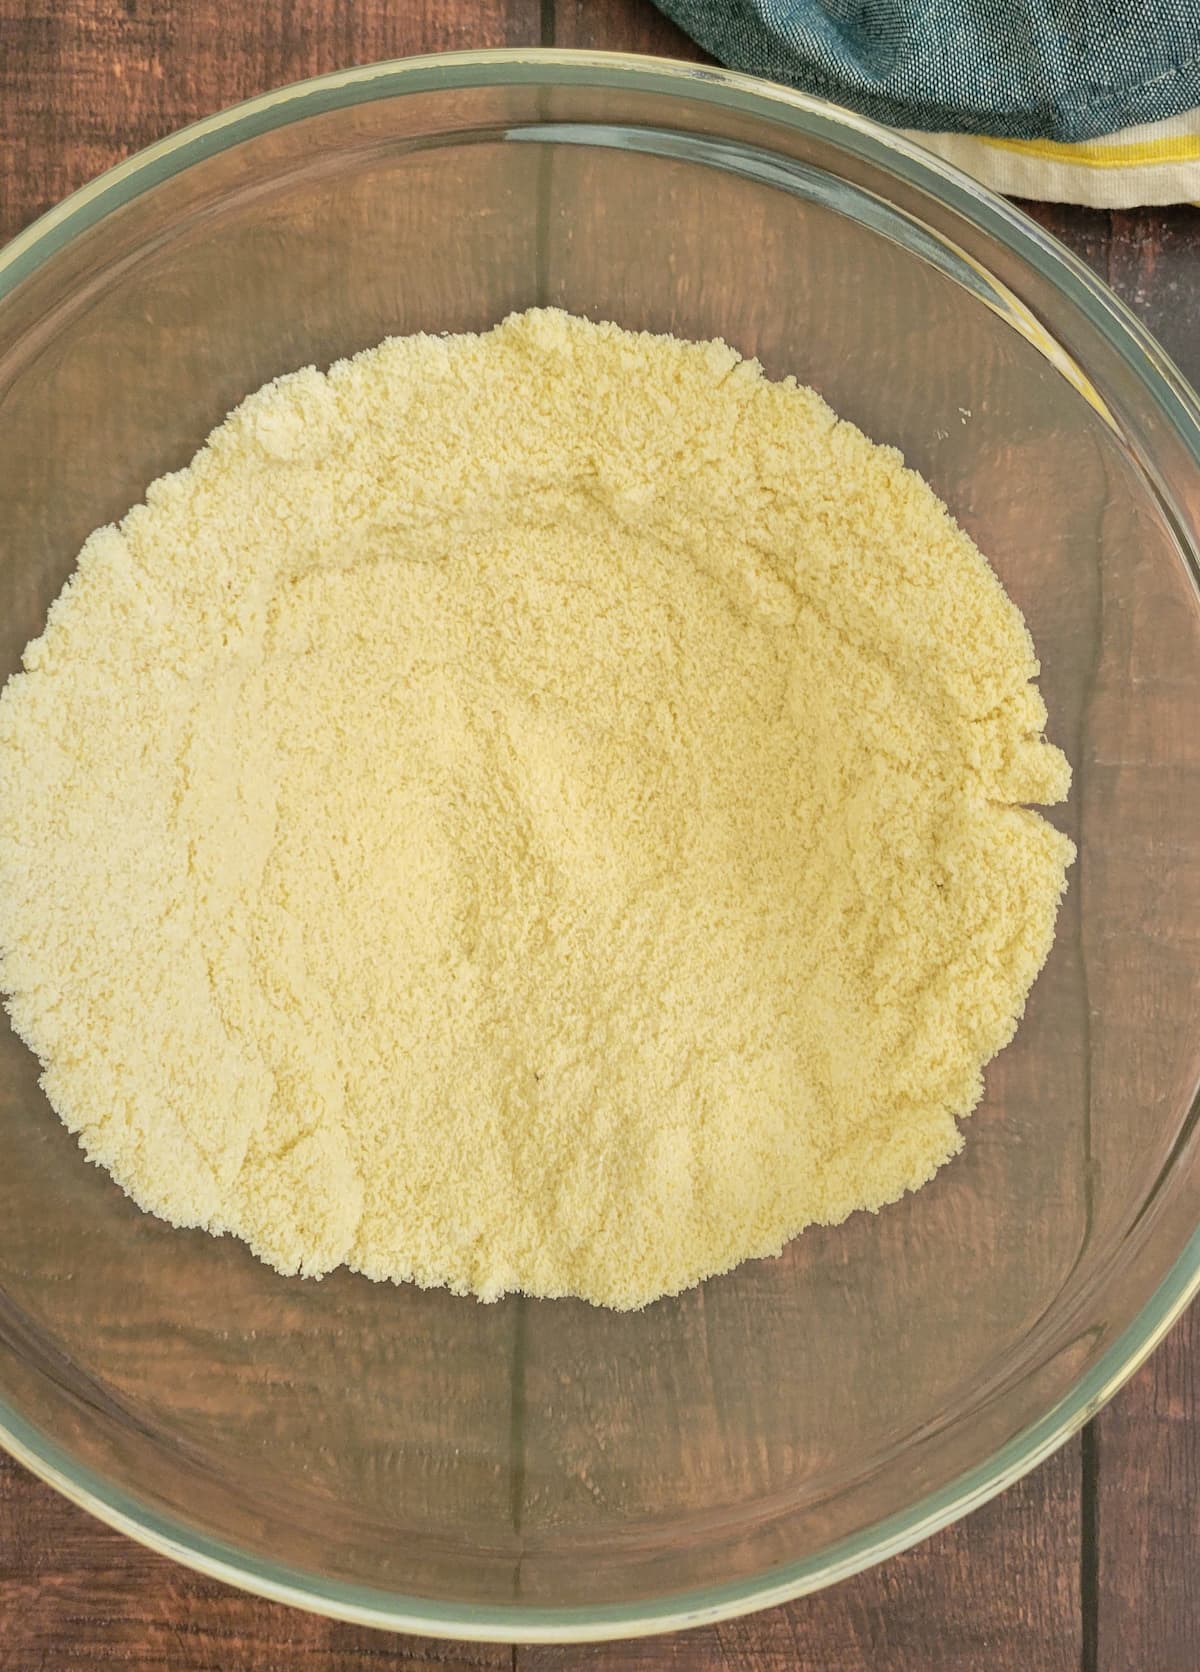 bowl of almond flour